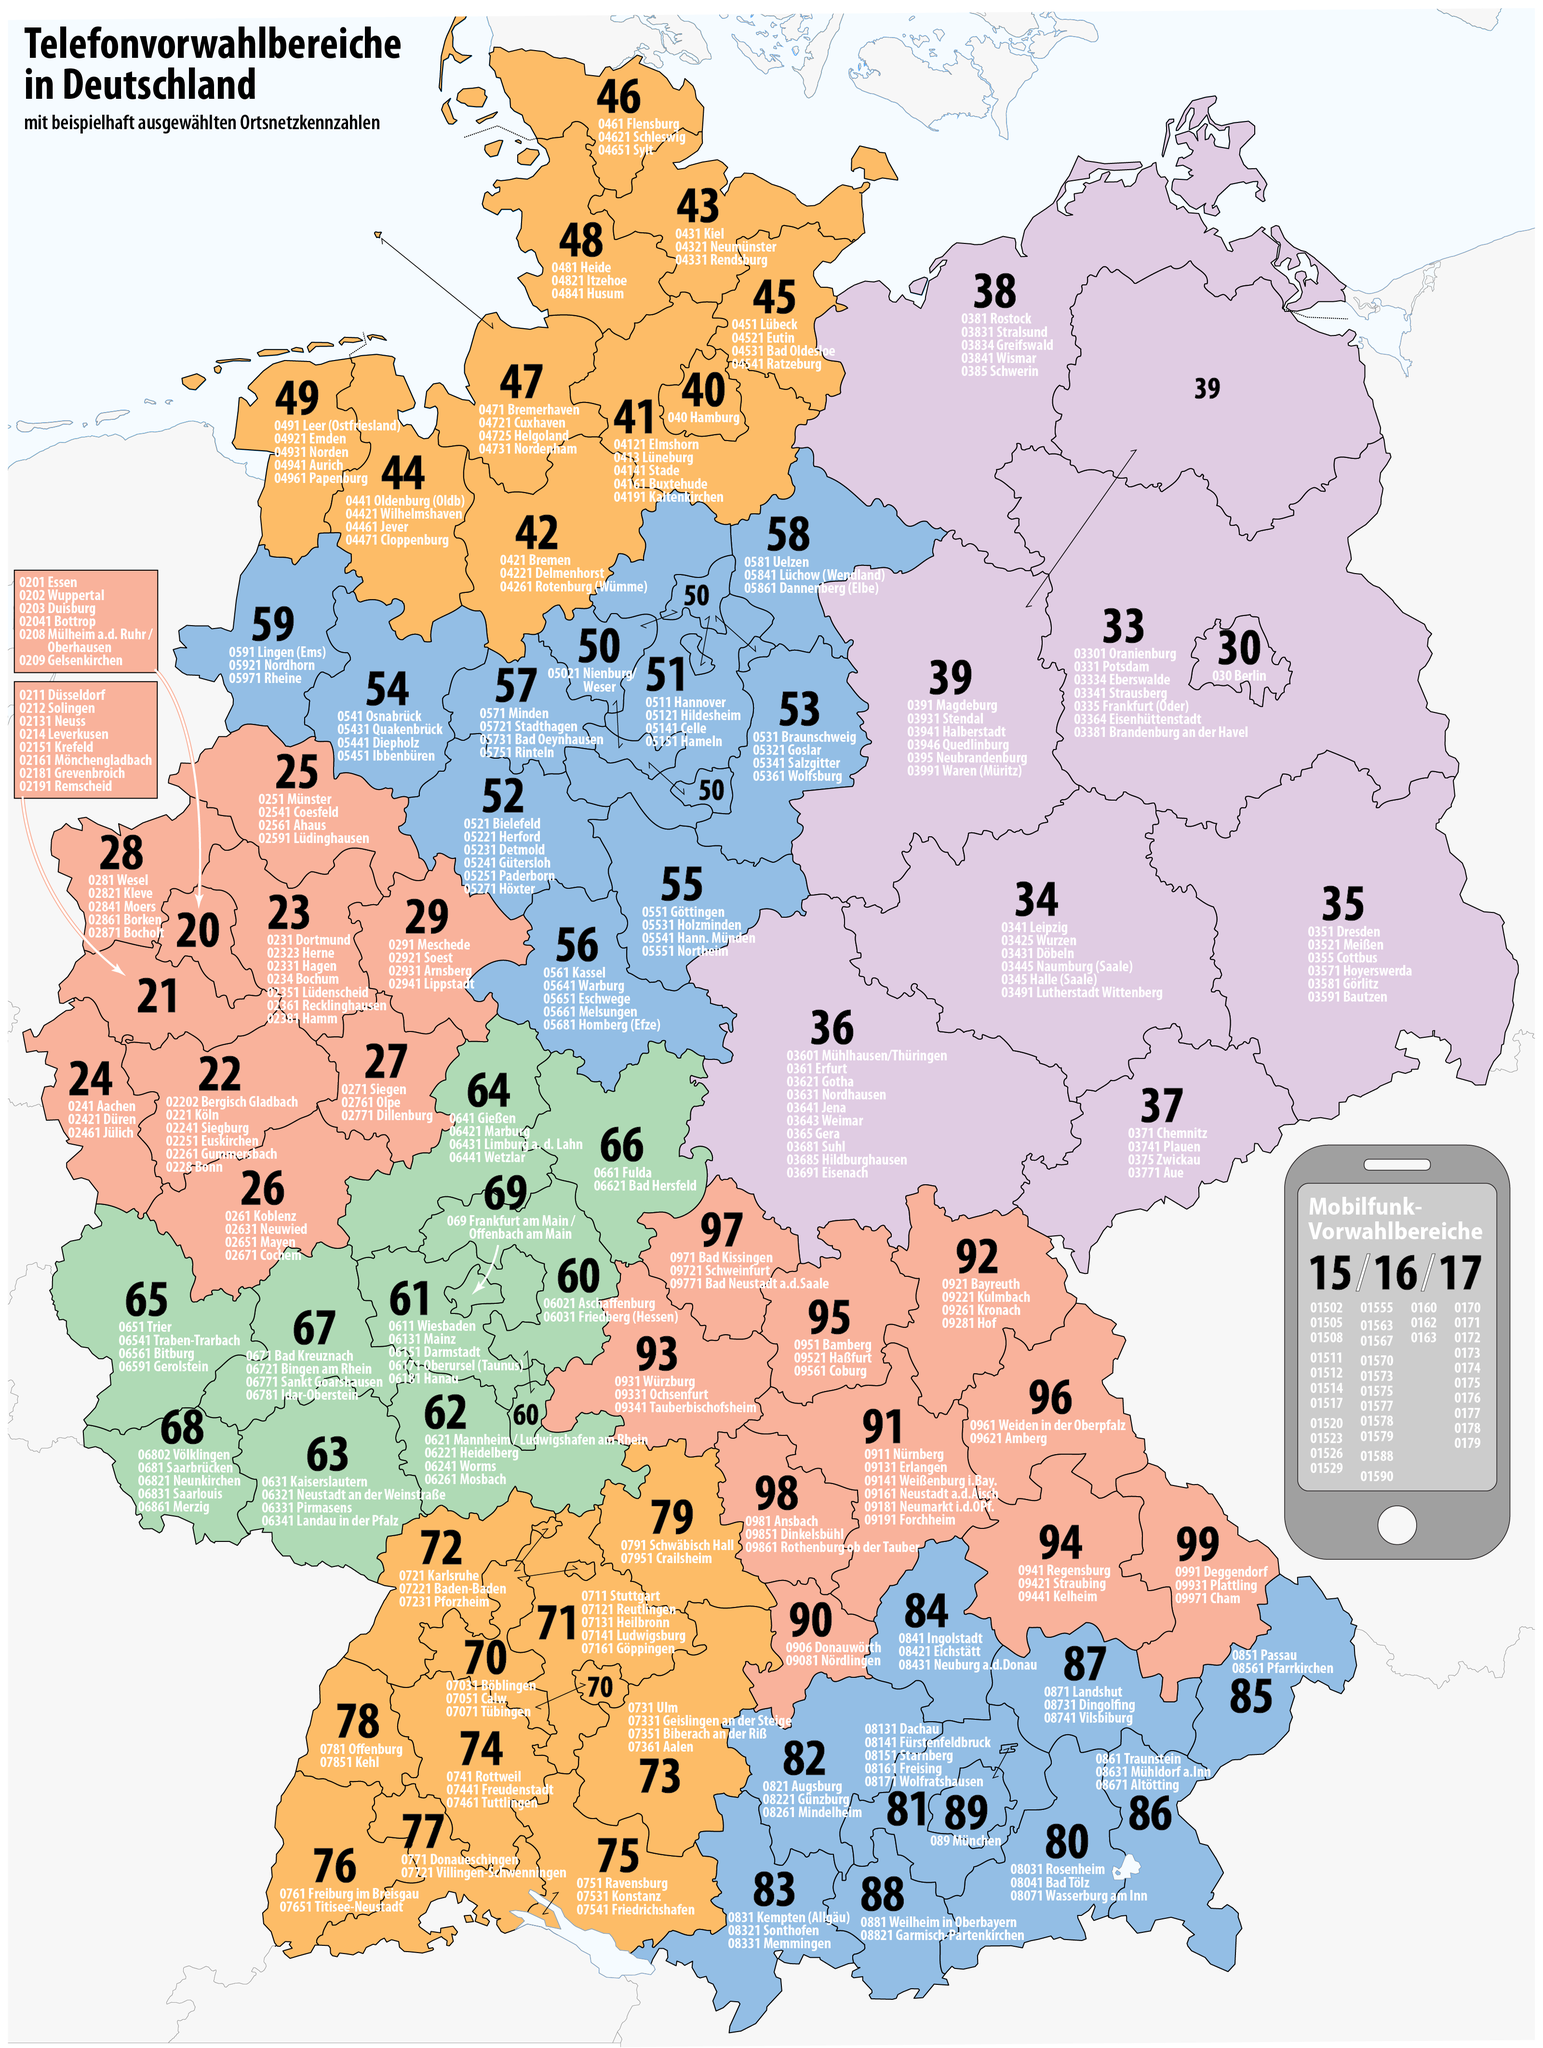 Vorwahl 06 (deutschland)